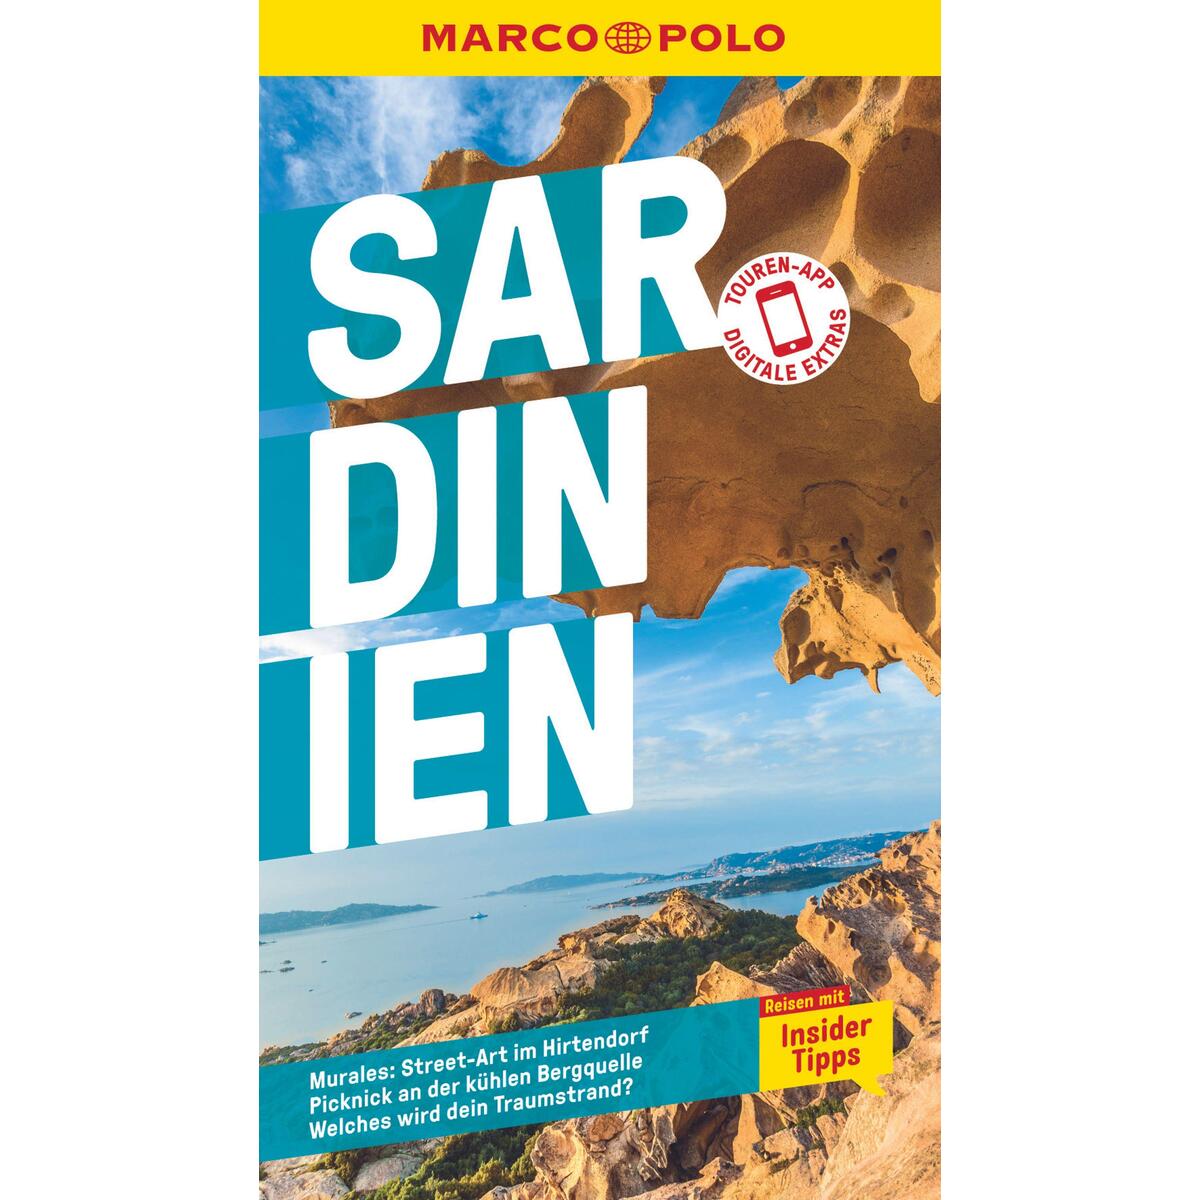 MARCO POLO Reiseführer Sardinien von Mairdumont